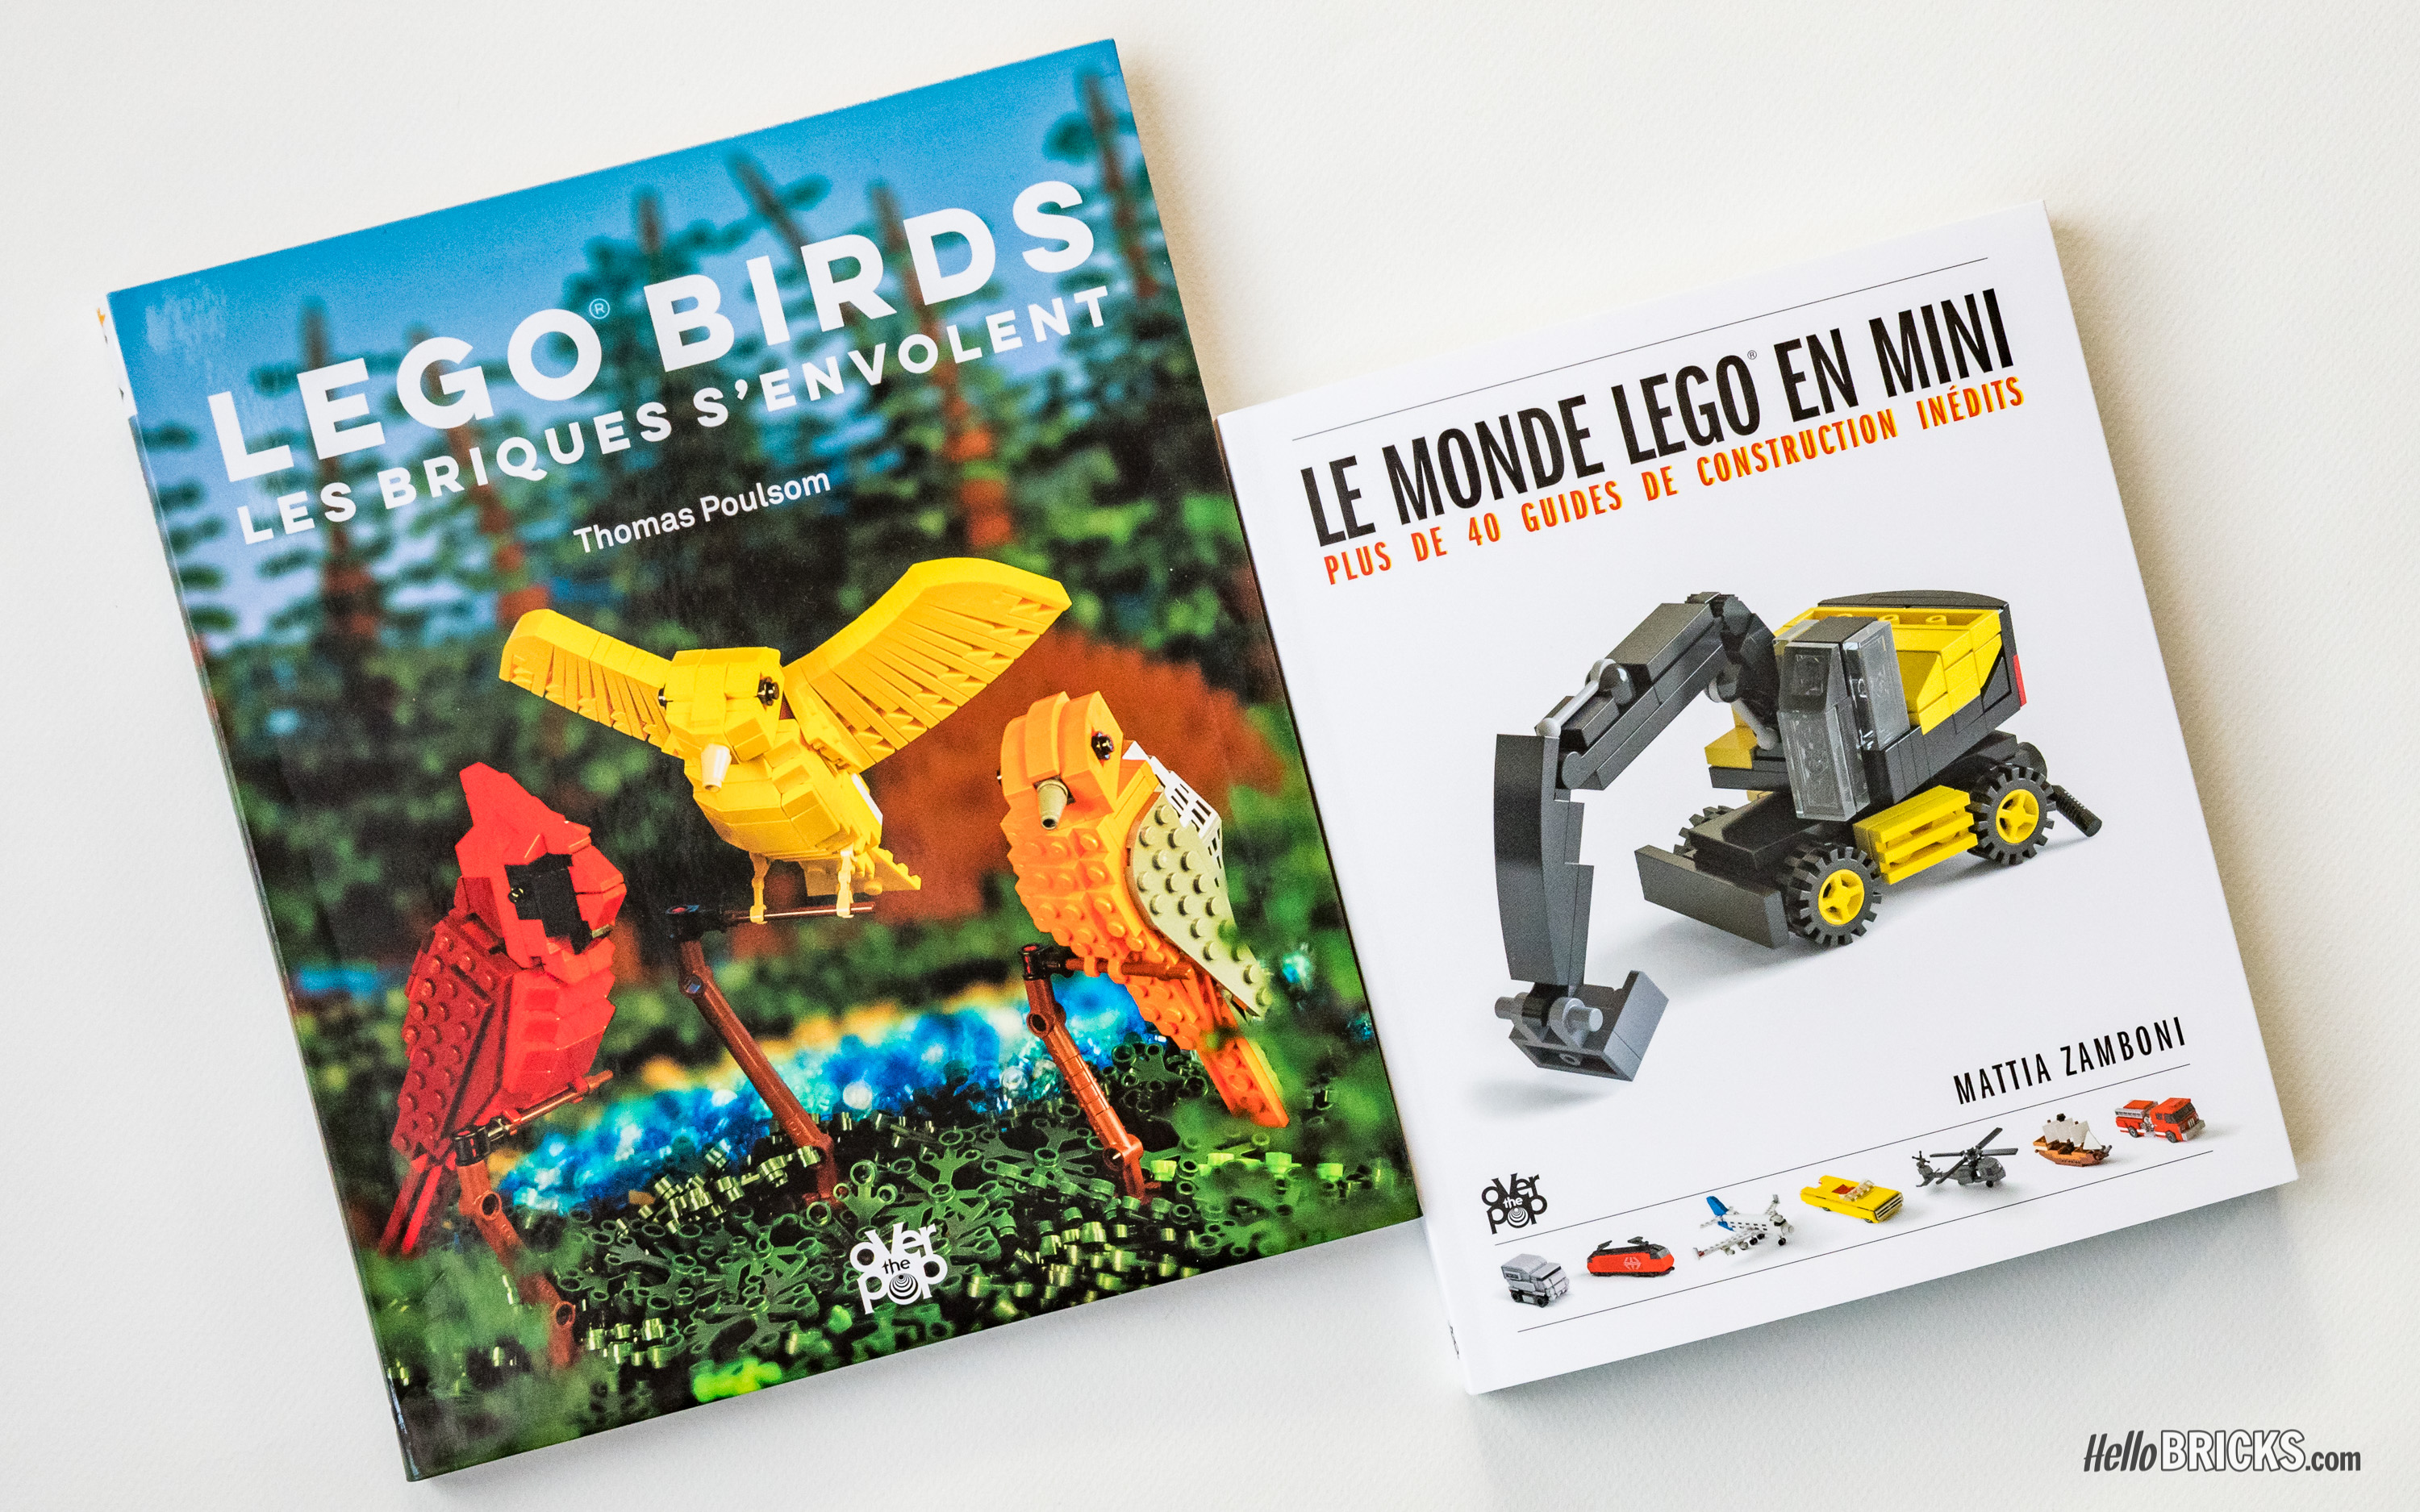 Lego birds : les briques s'envolent